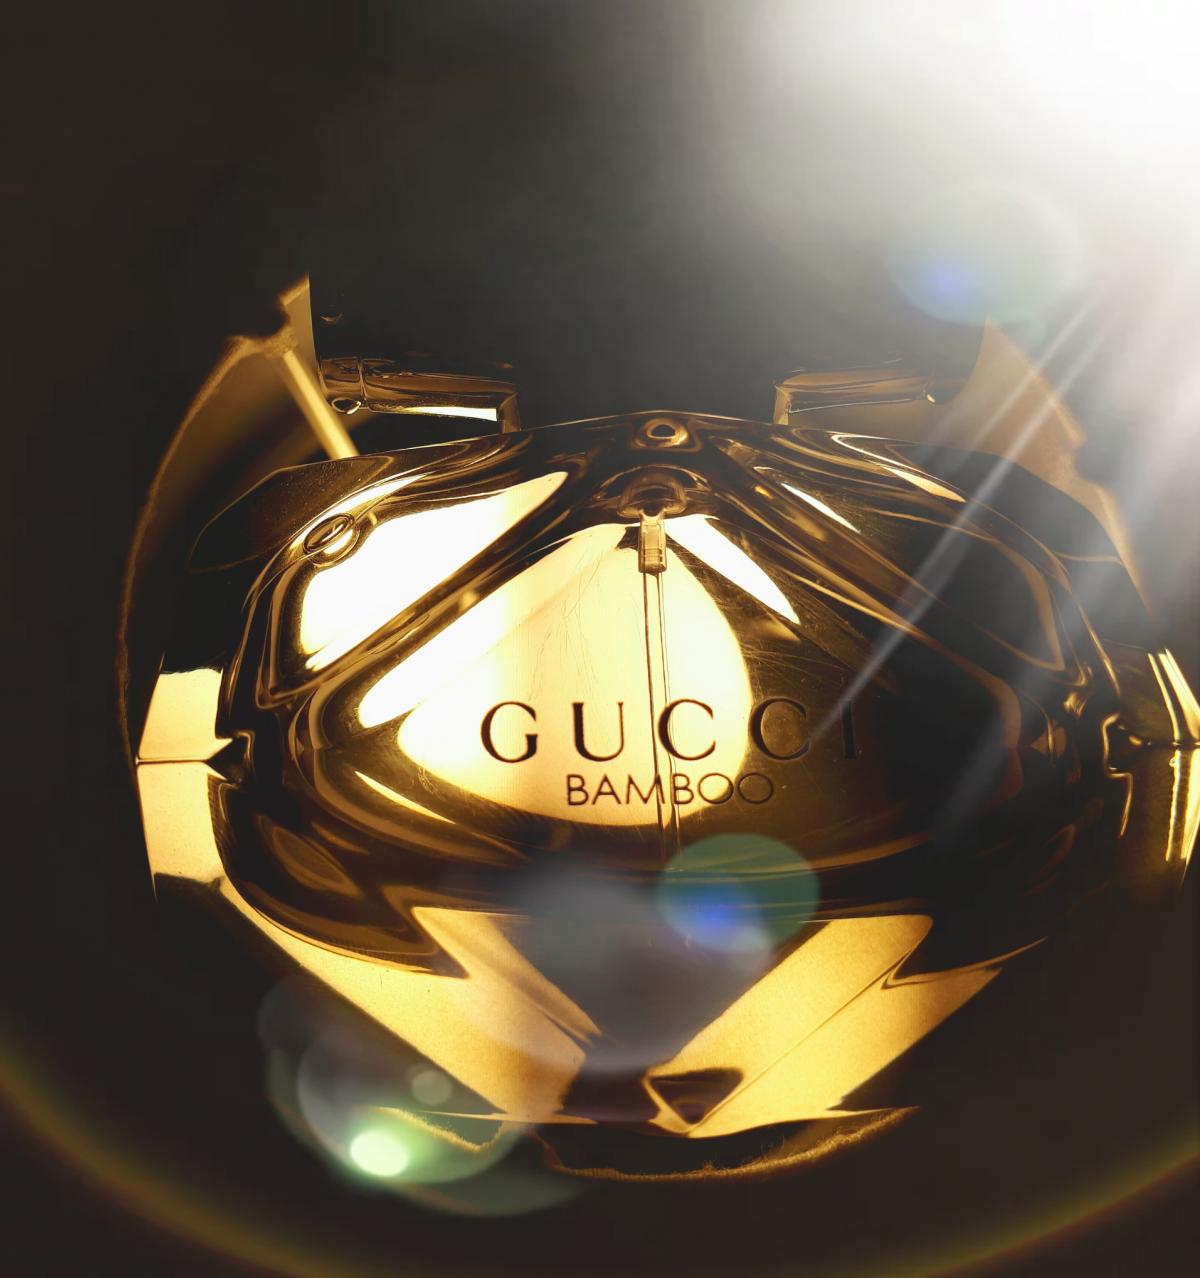 Gucci Bamboo Gucci аромат — аромат для женщин 2015